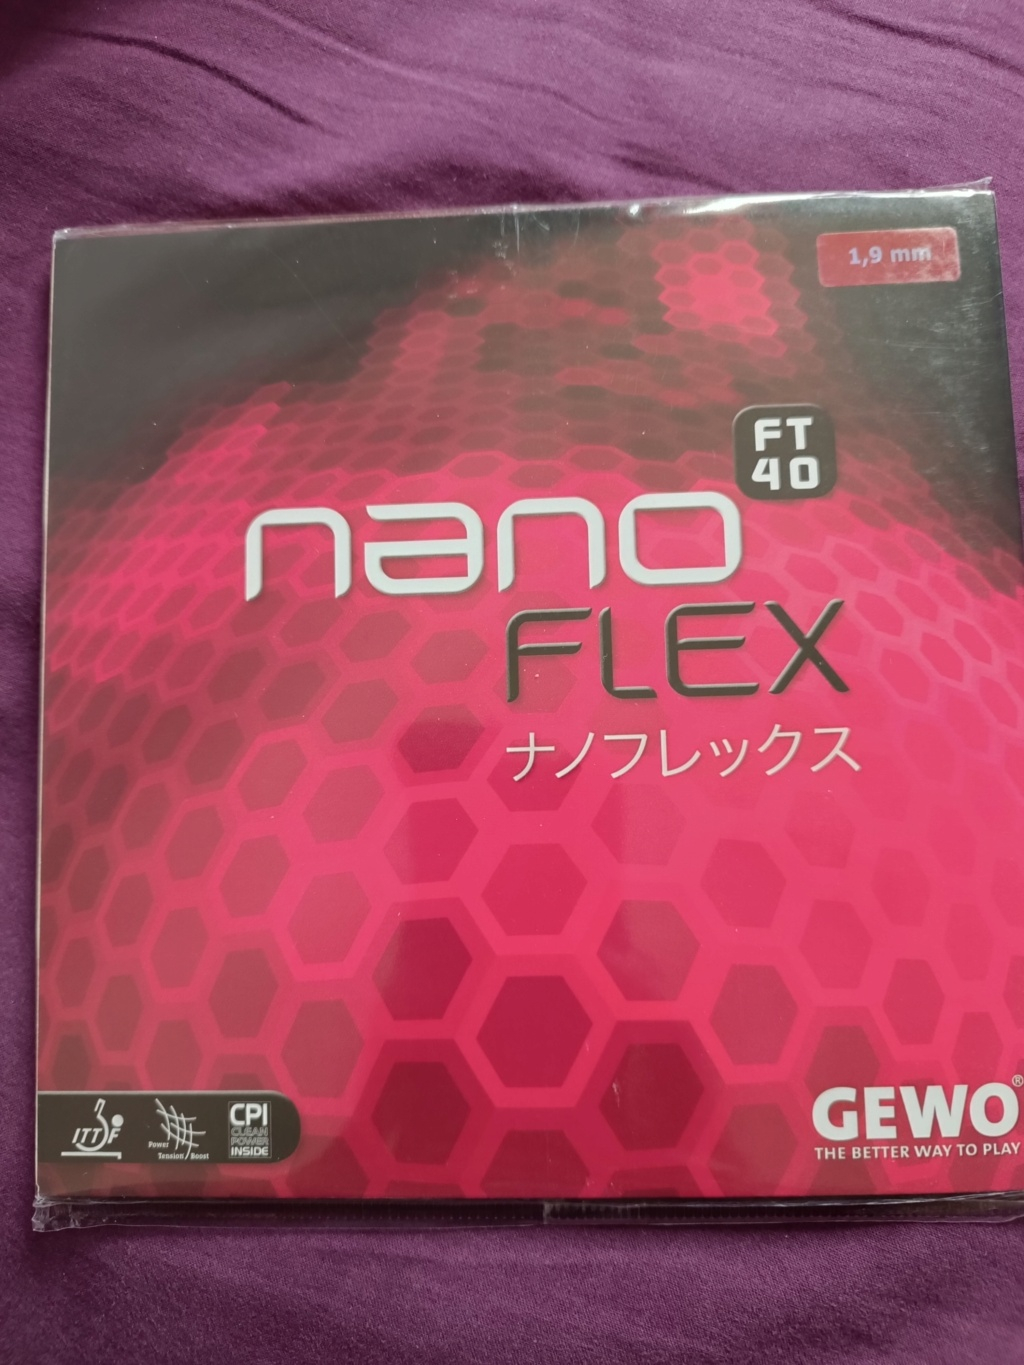 Gewo Nanoflex Ft40 sous blister  Img_2260